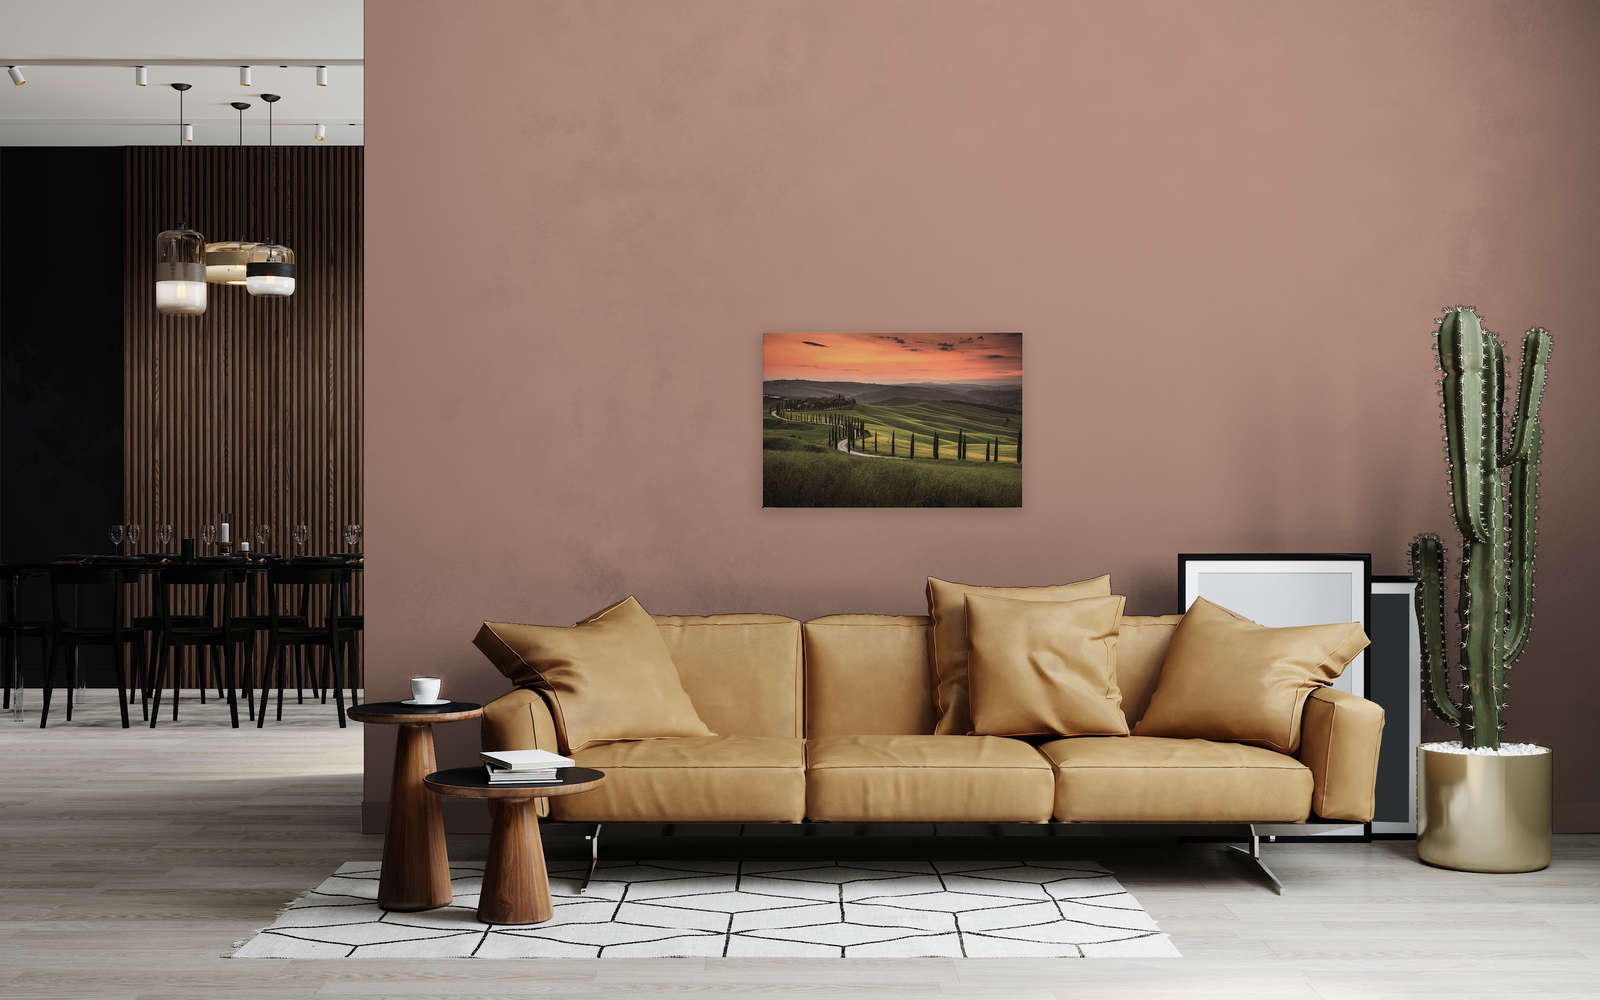             Canvas met Toscaans landschap bij schemering - 0.90 m x 0.60 m
        